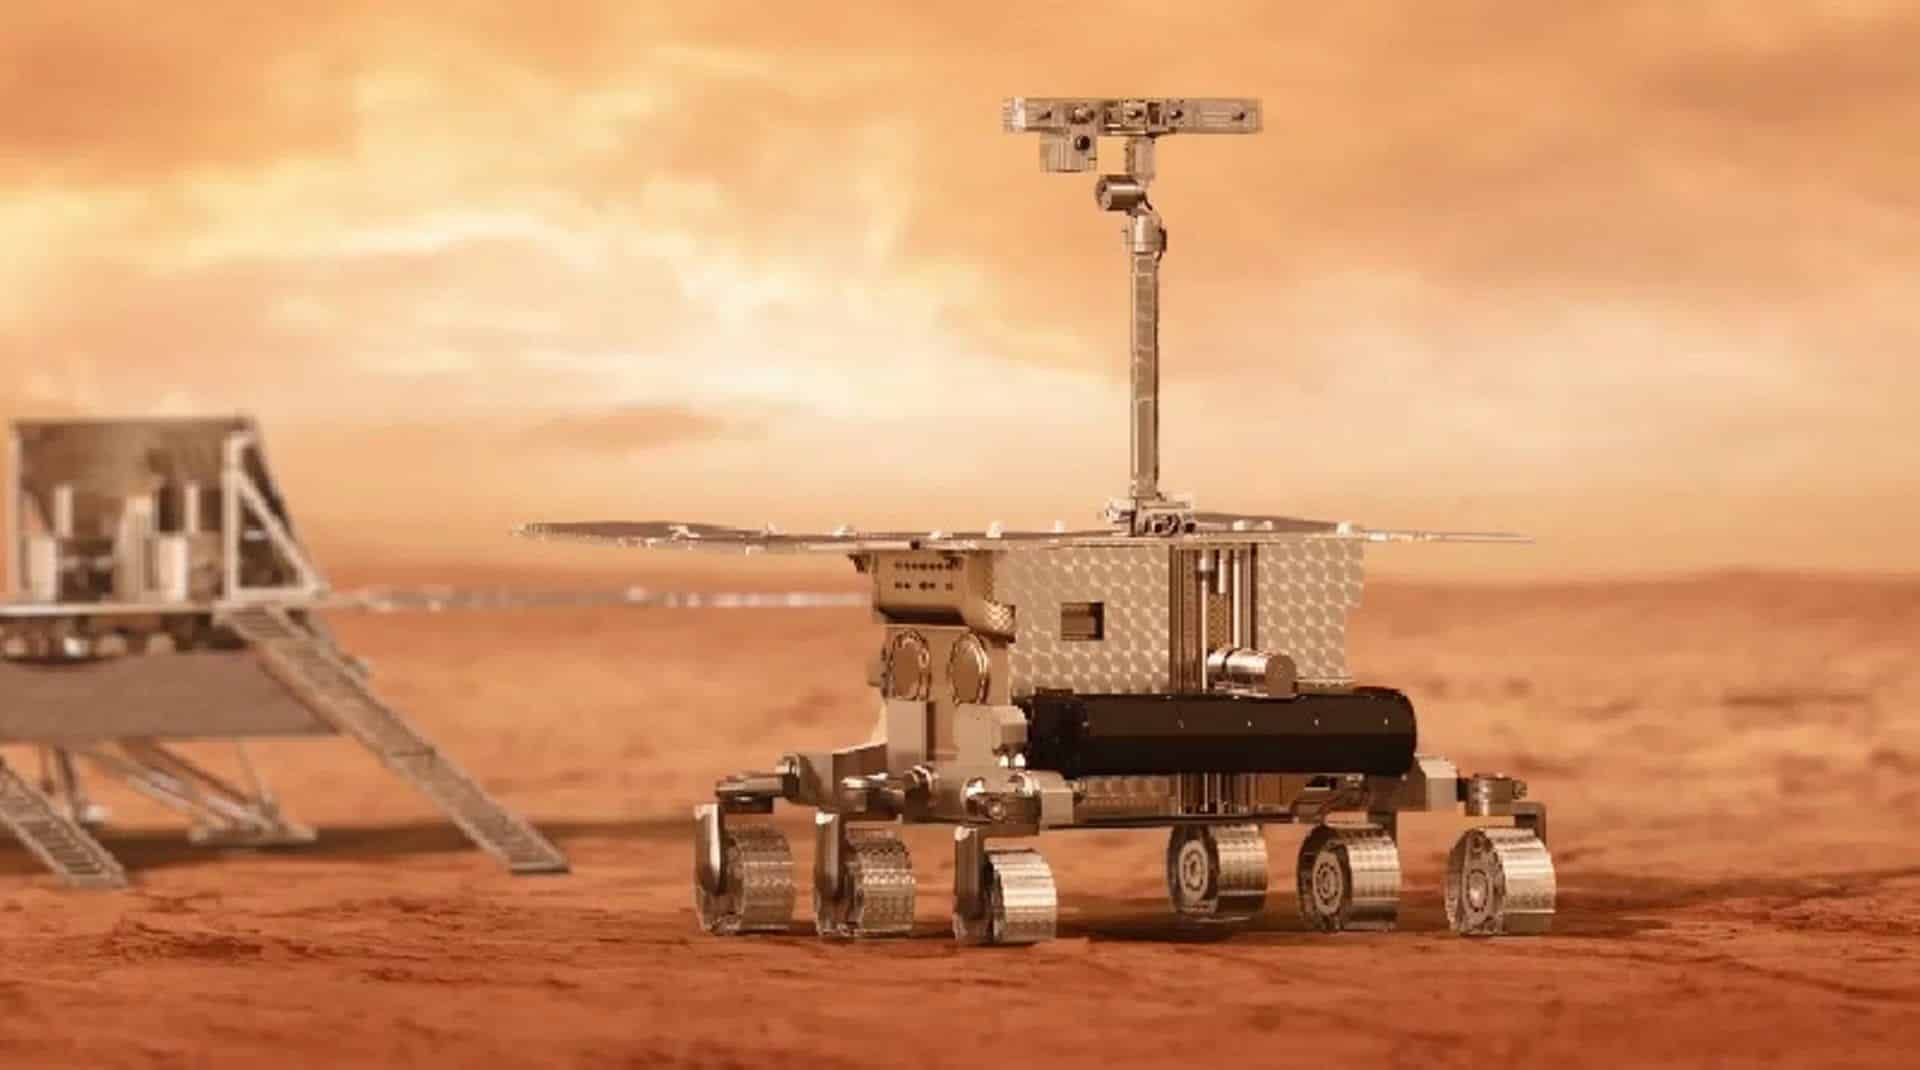 Missões a Marte - história da exploração espacial do planeta vermelho